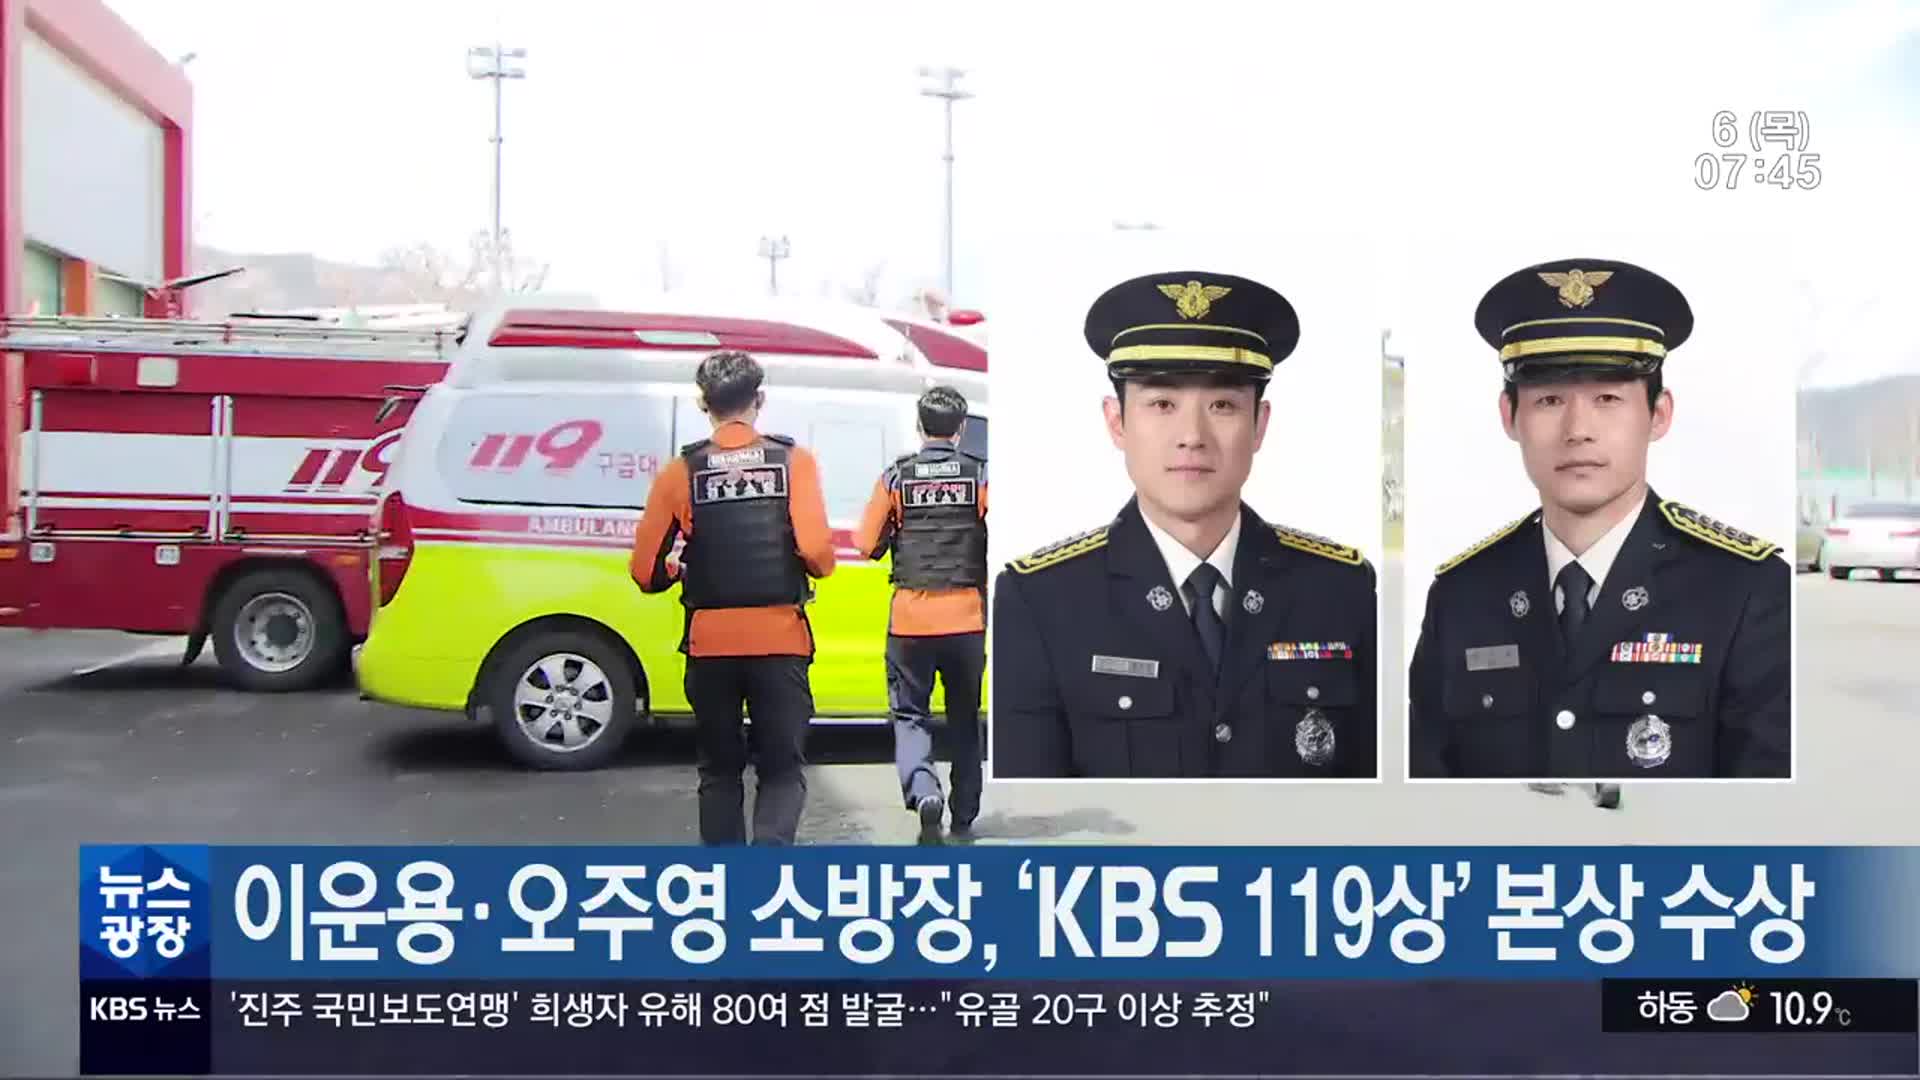 이운용·오주영 소방장, ‘KBS 119상’ 본상 수상